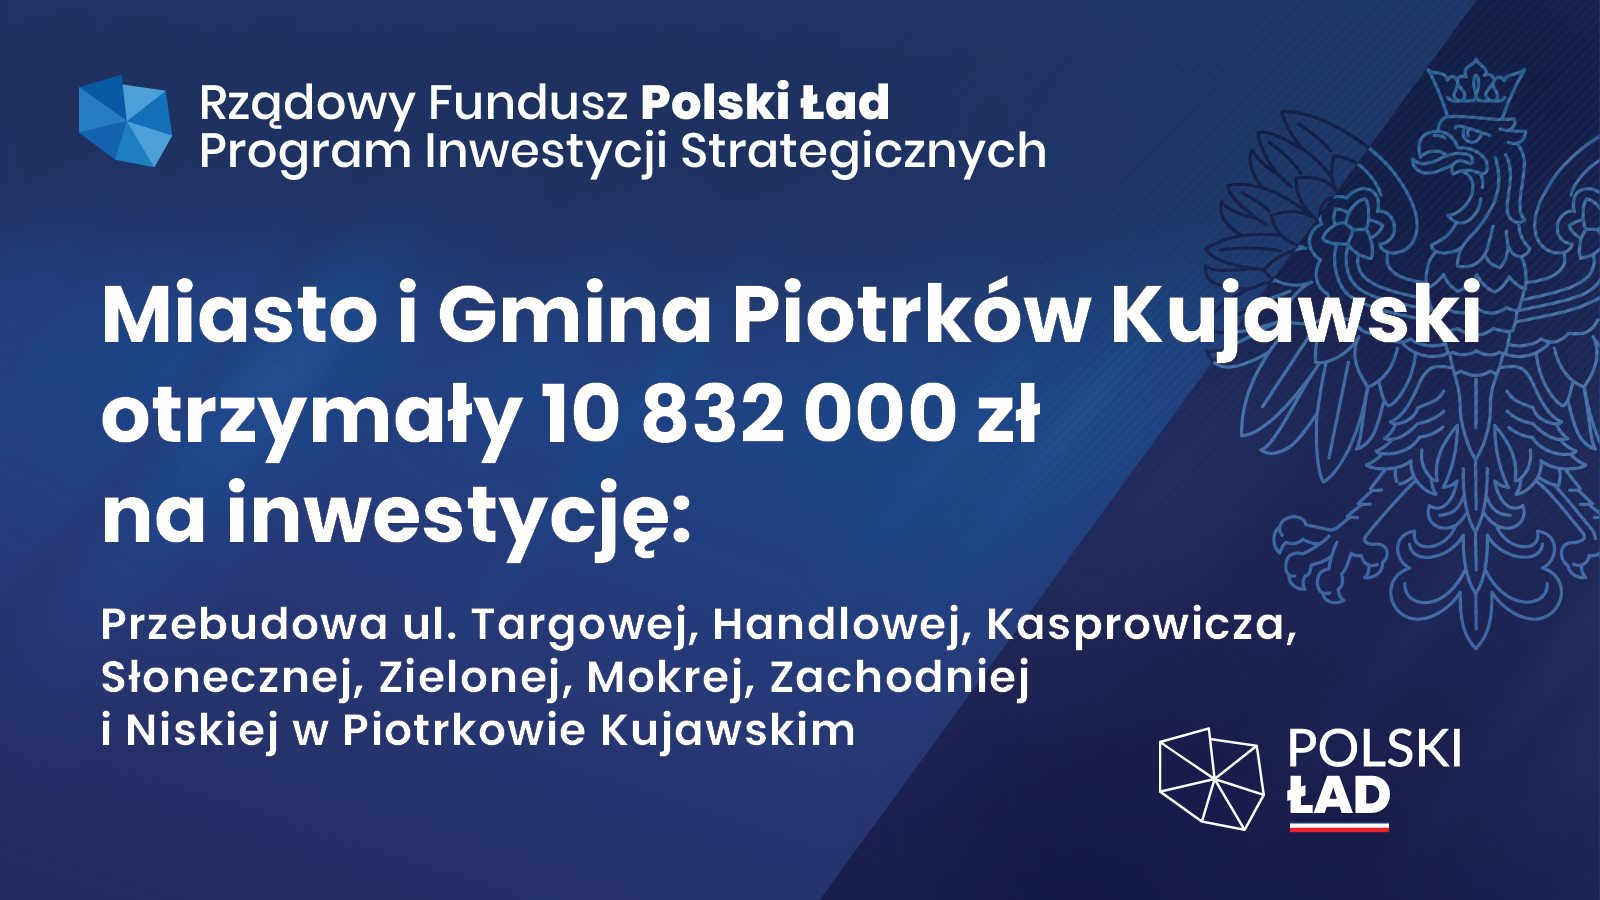 Miasto i Gmina Piotrków Kujawski 10 832 000 zł 